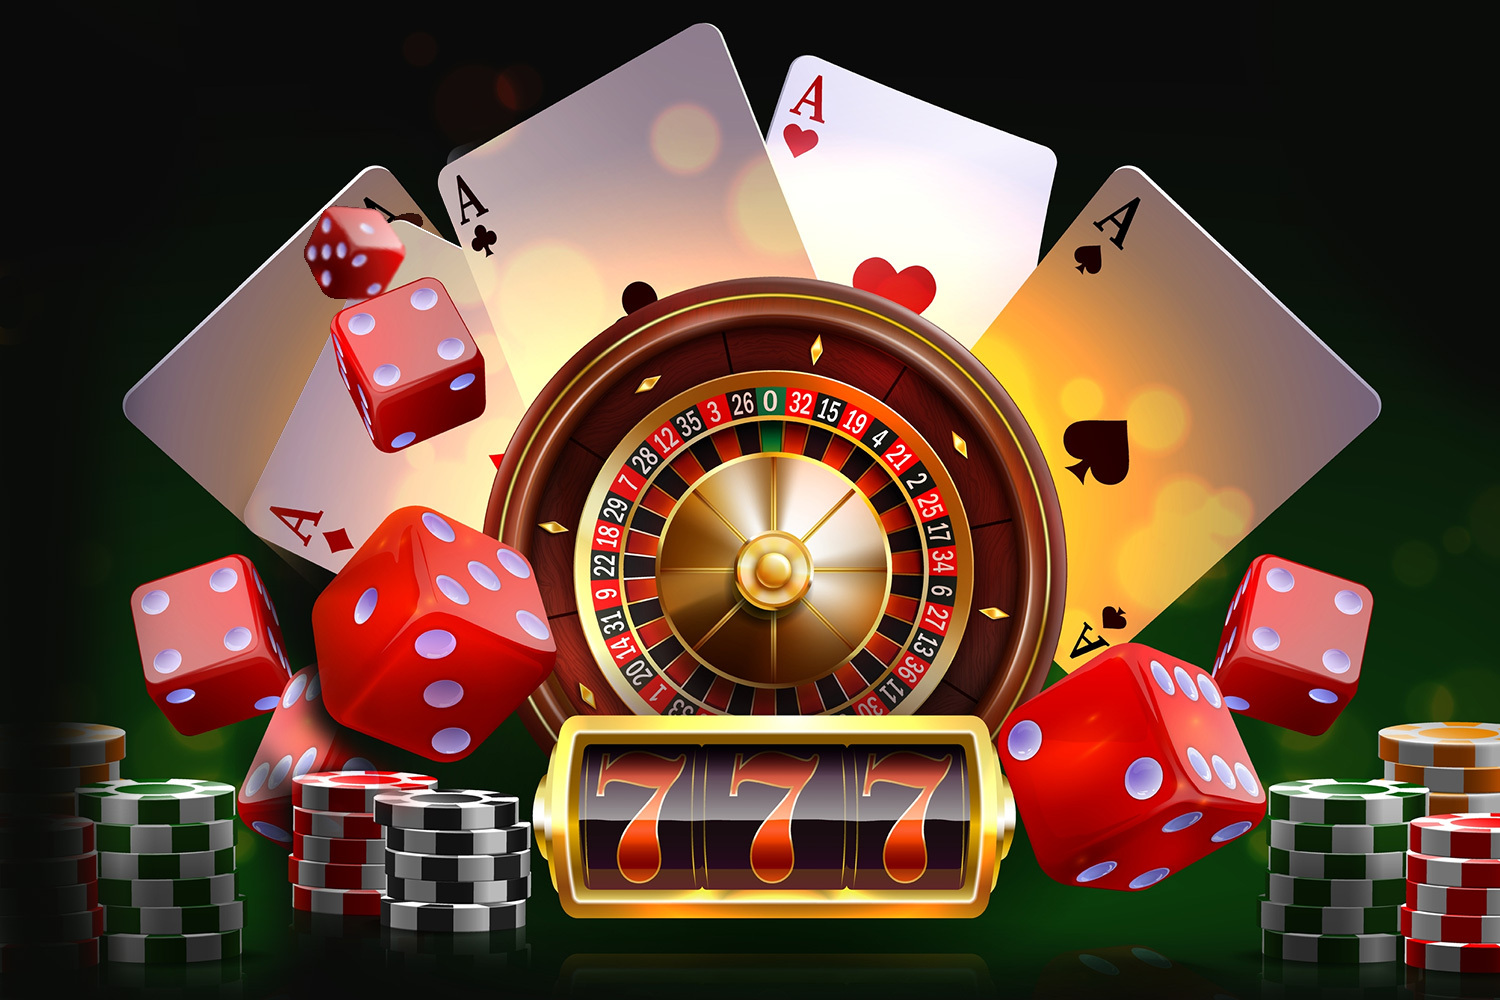 Super nützliche Tipps zur Verbesserung von neue Online Casinos